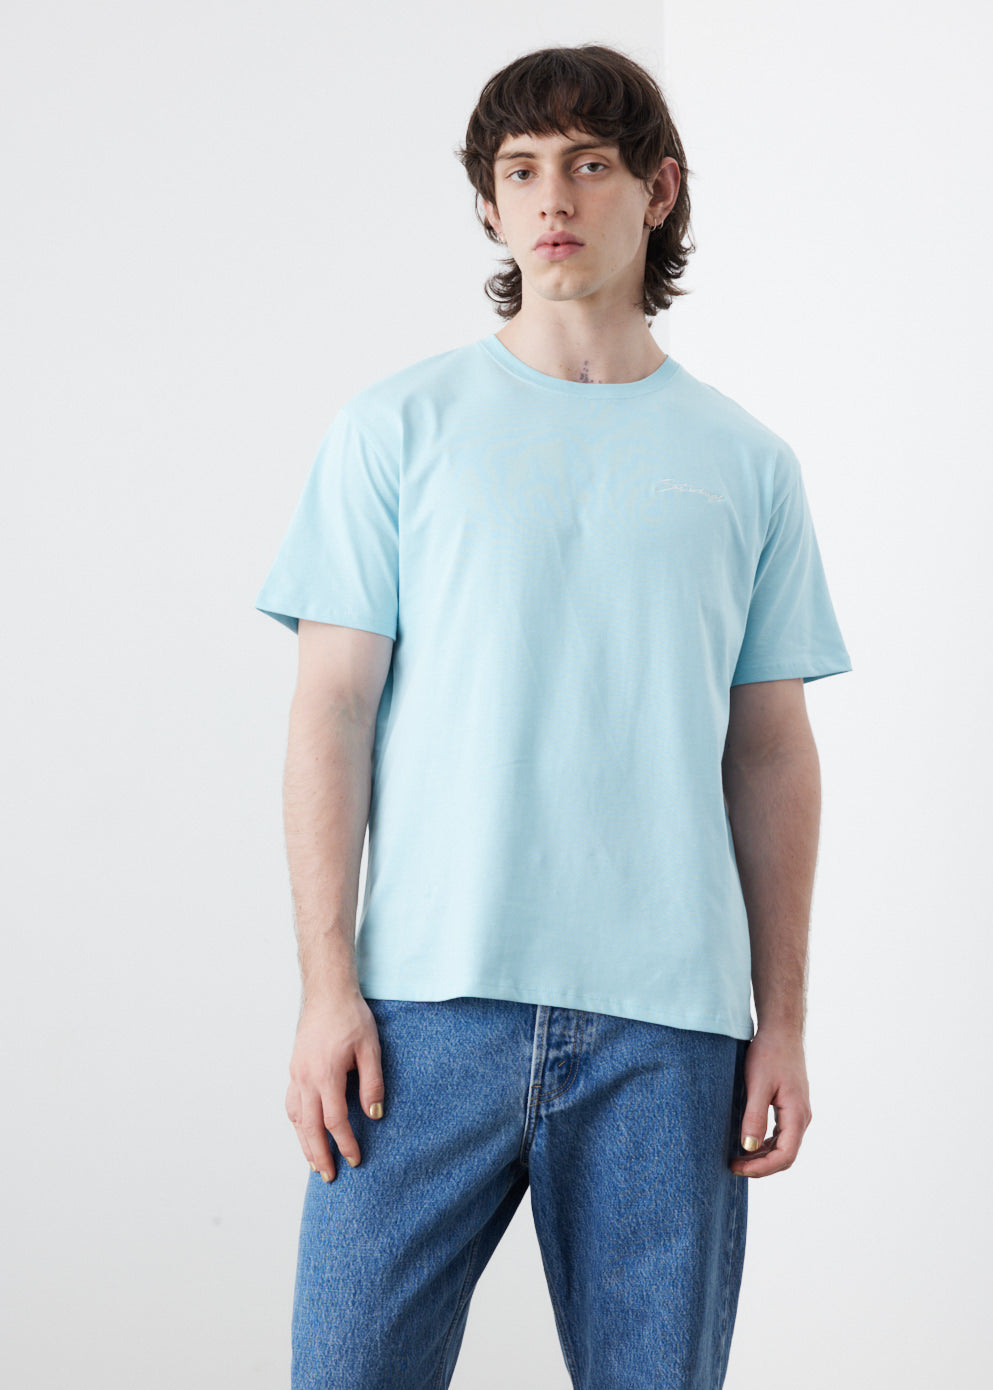 Script Embroidered Standard Short Sleeve T-Shirt